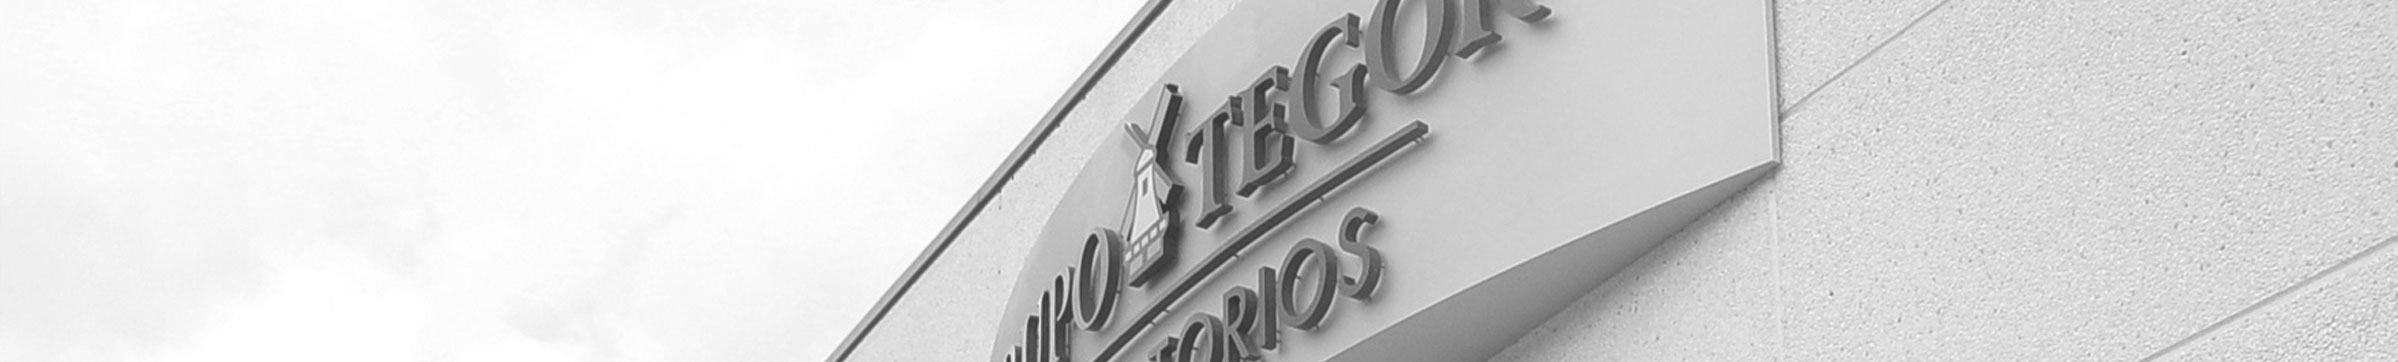 Imagen del logotipo de Grupo Tegor